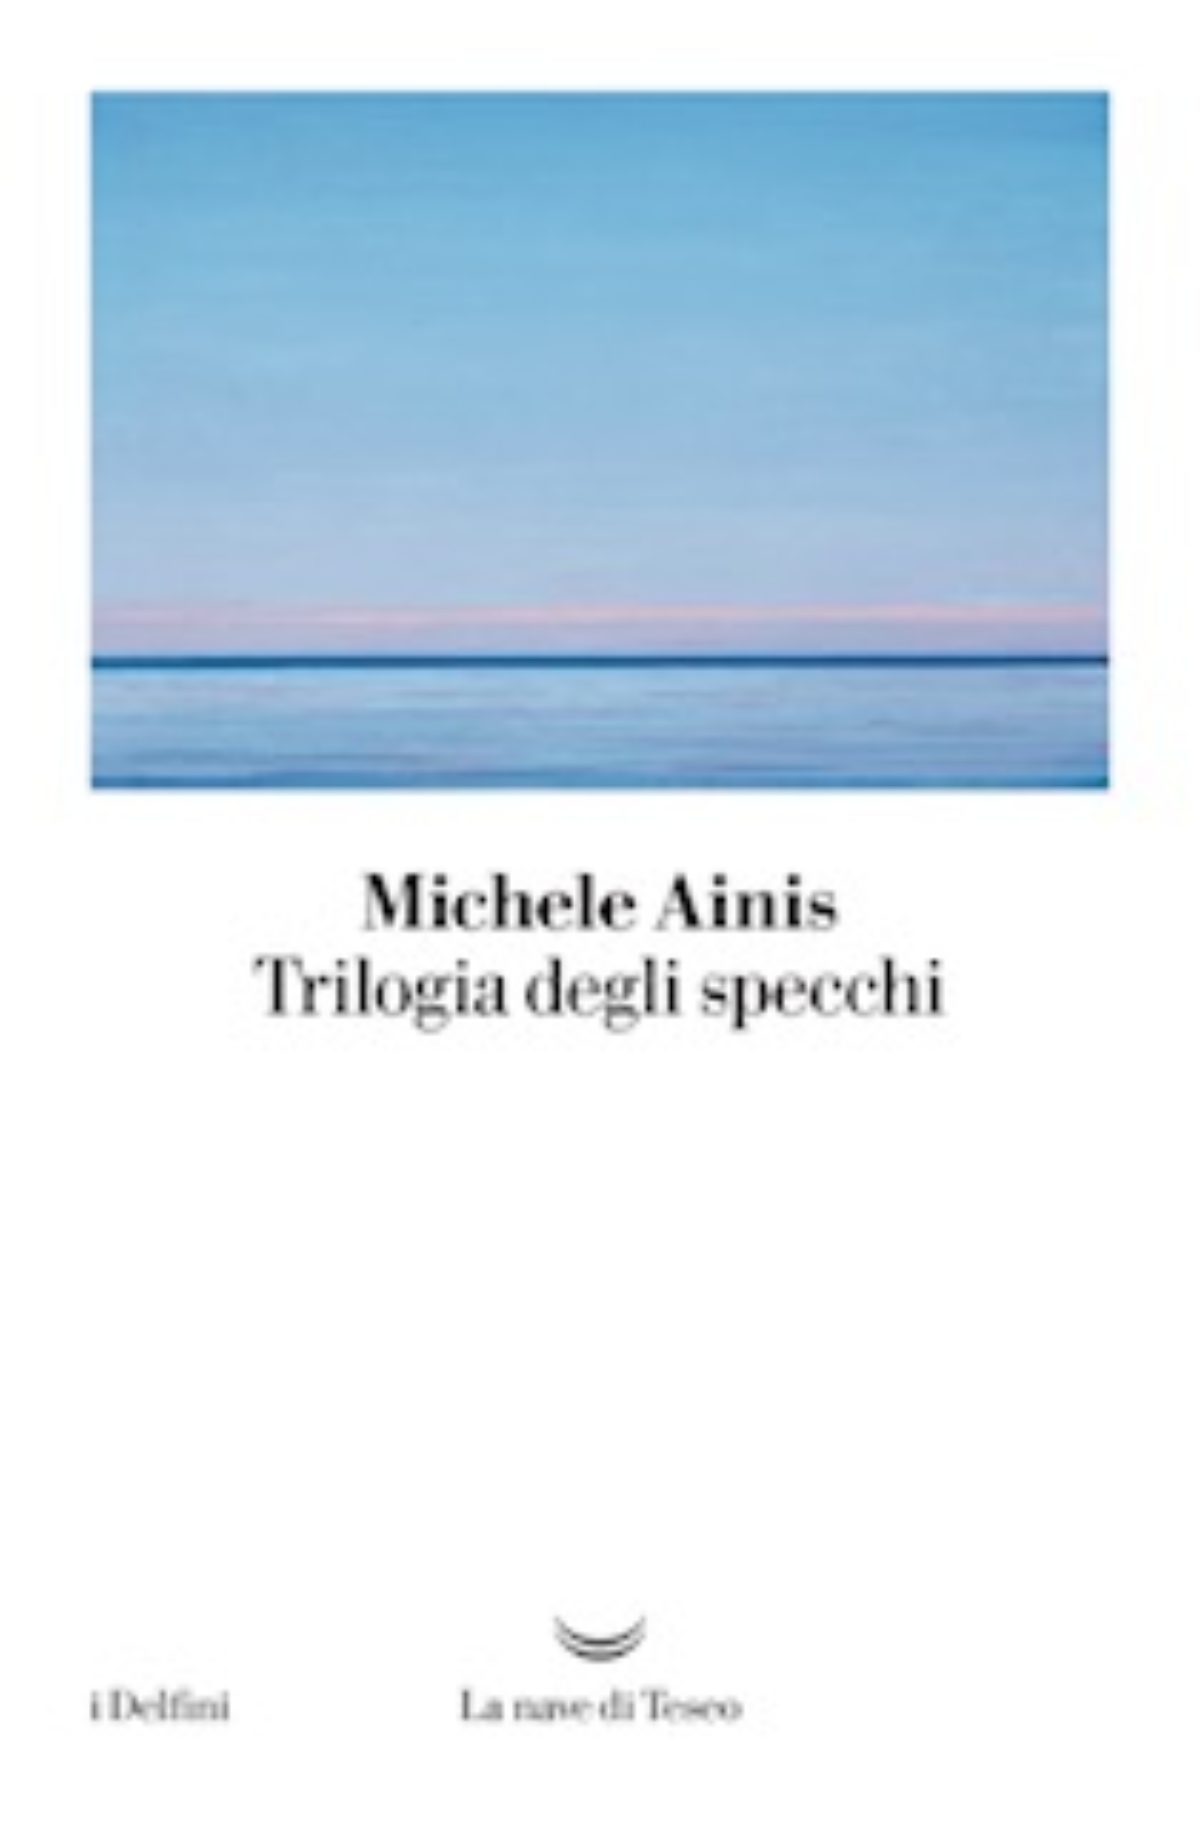 Michele Ainis, “Trilogia degli specchi” è l’opera in tre atti che raccoglie il mondo narrativo del costituzionalista